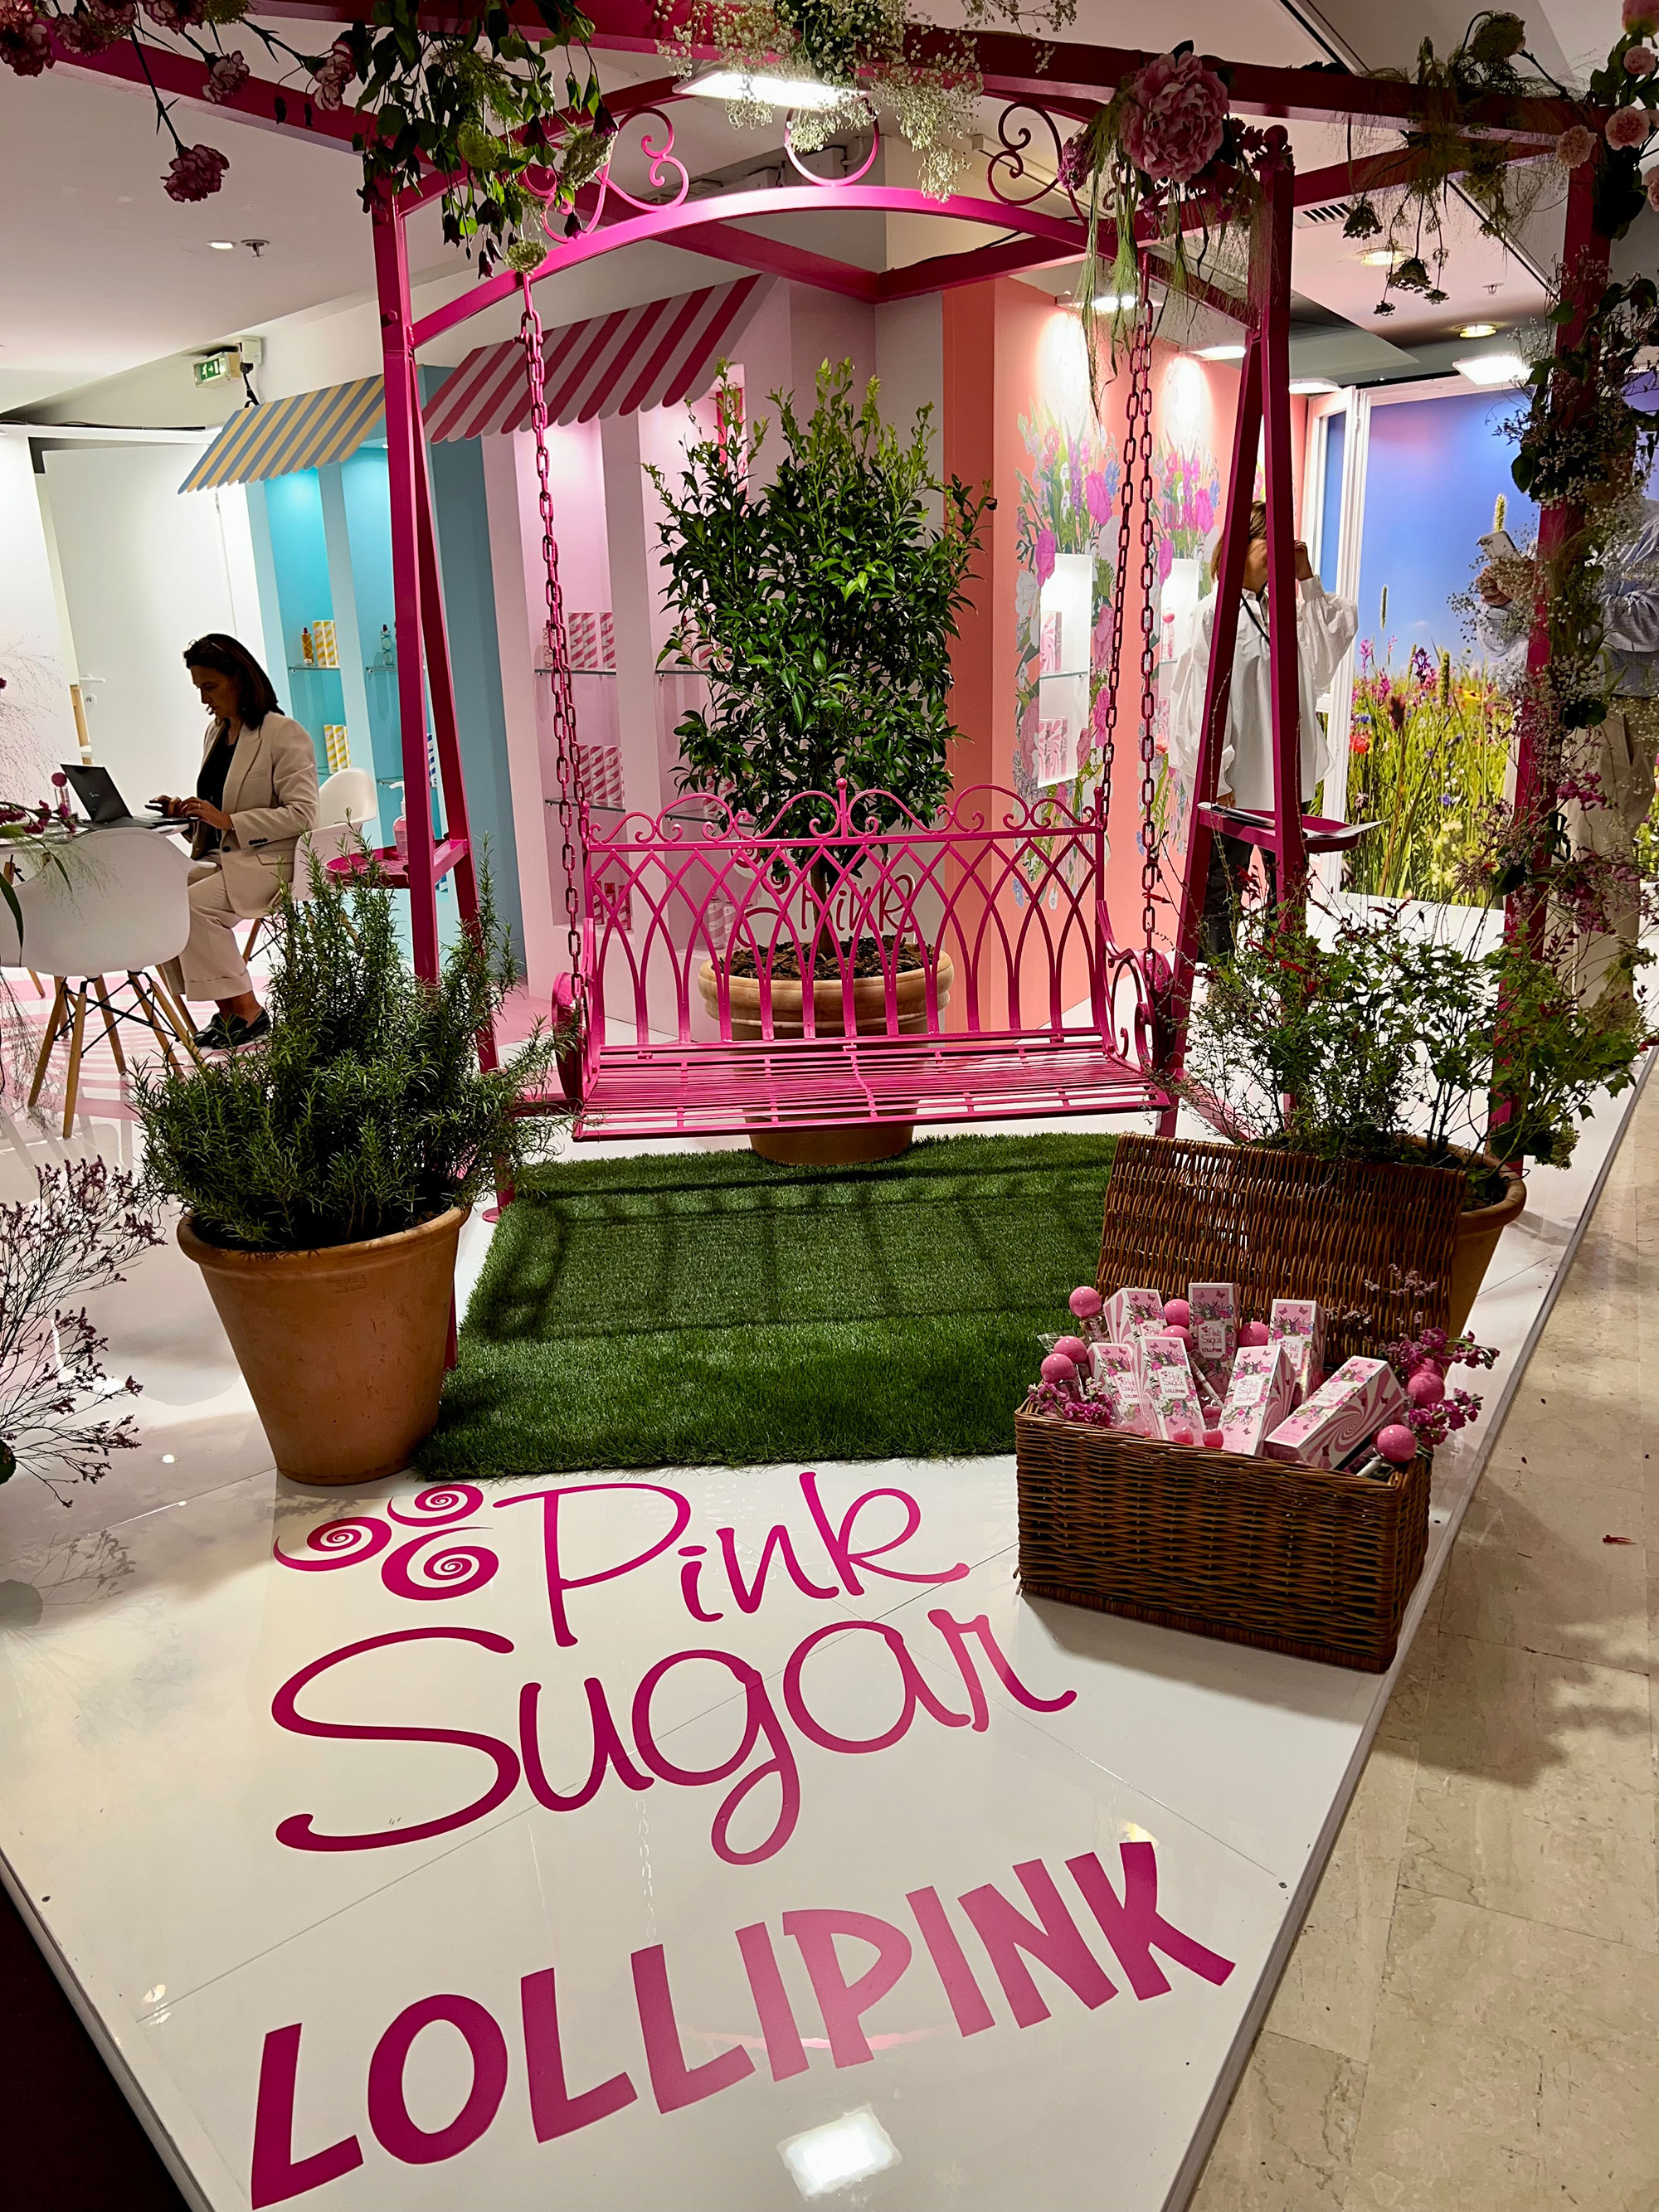 Pink Sugar Lollipink Eau De Toilette Perfume for Women